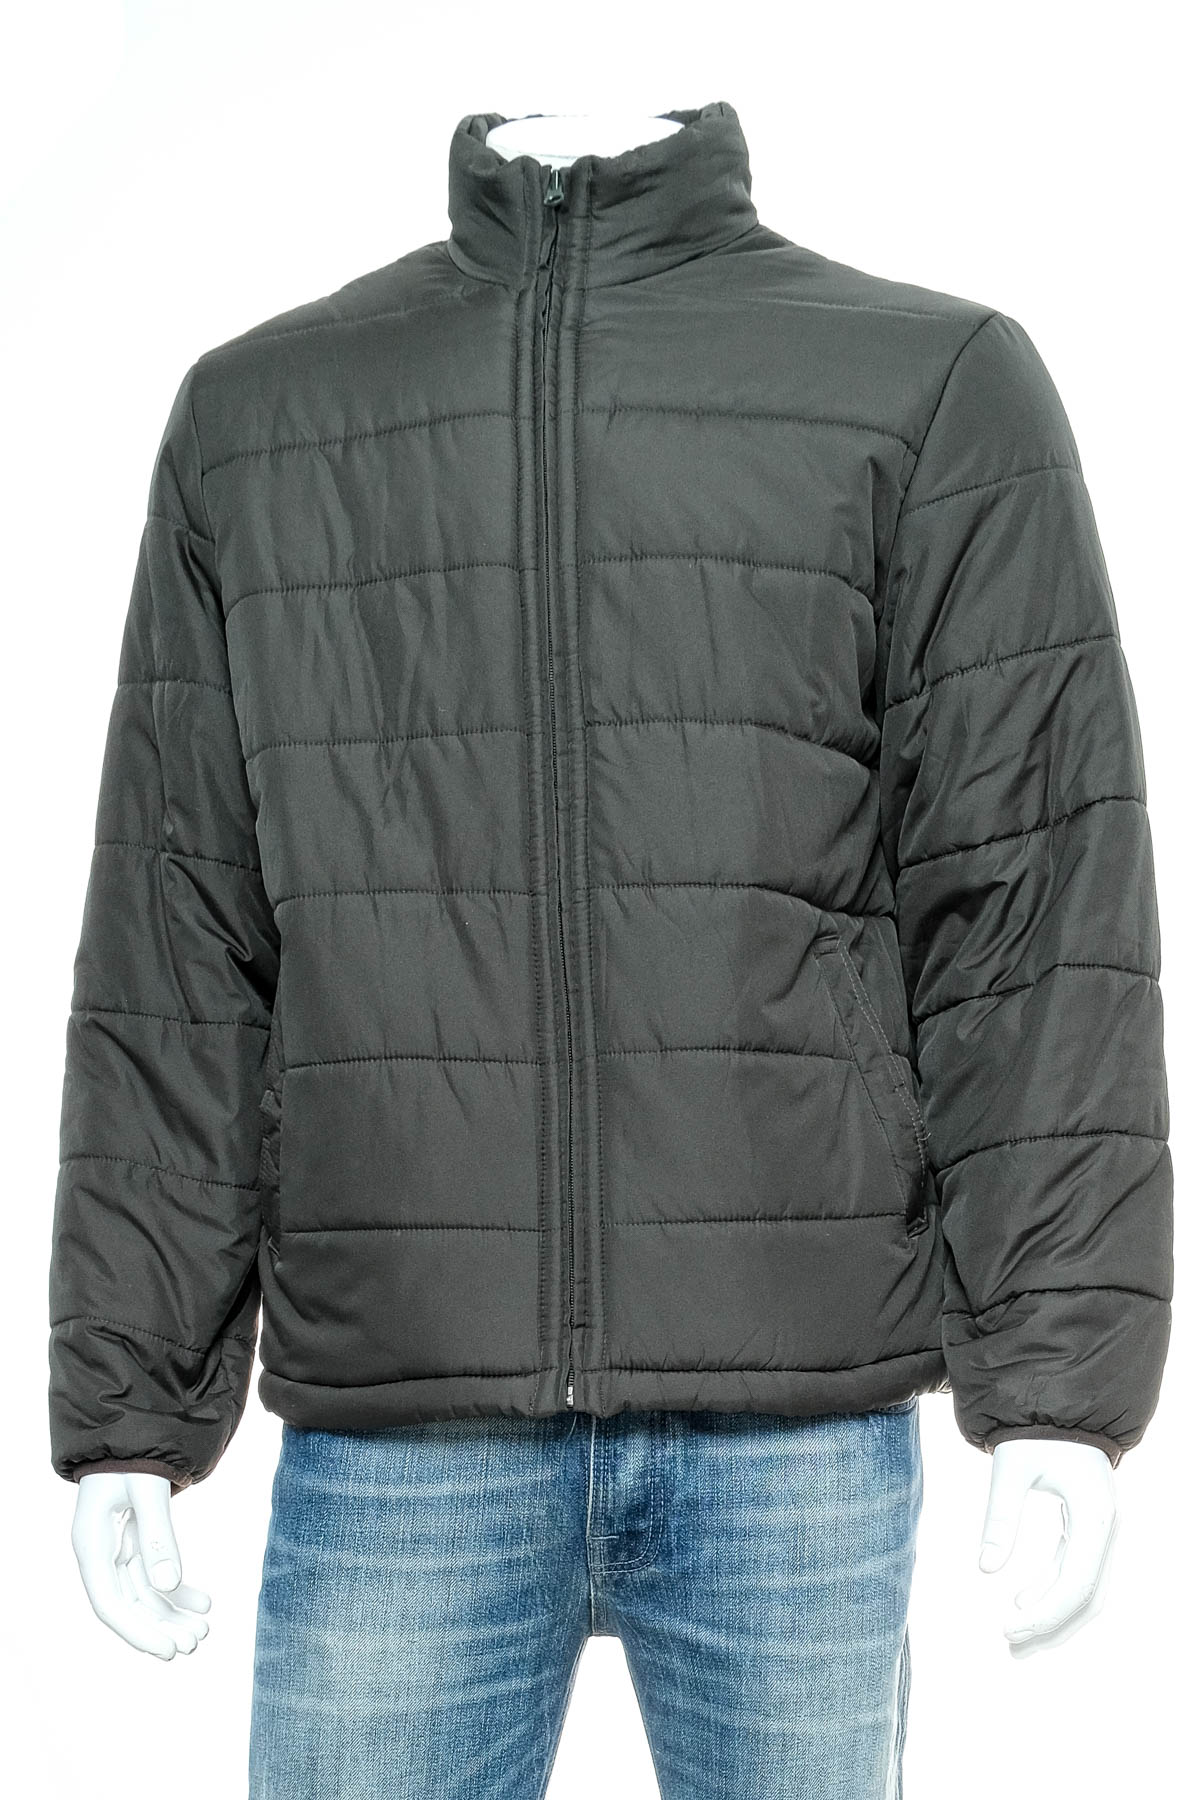 Men's jacket - OLD NAVY - 0